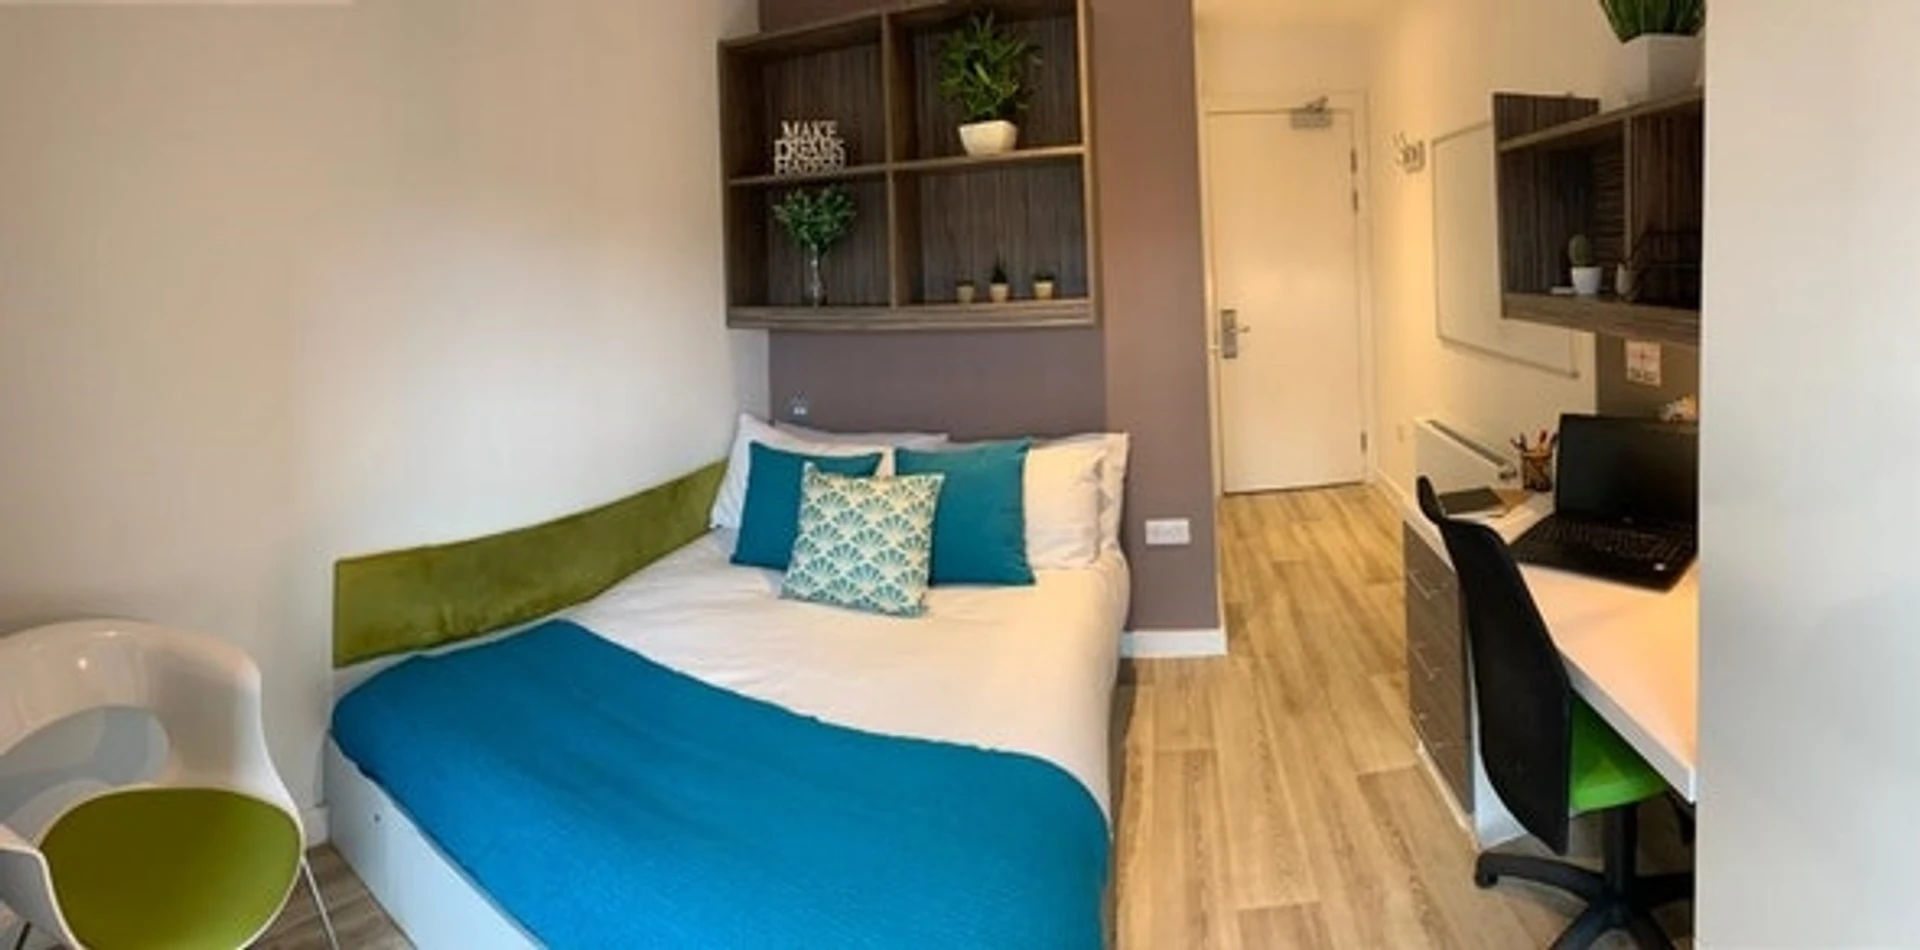 Chambre à louer dans un appartement en colocation à newcastle-upon-tyne